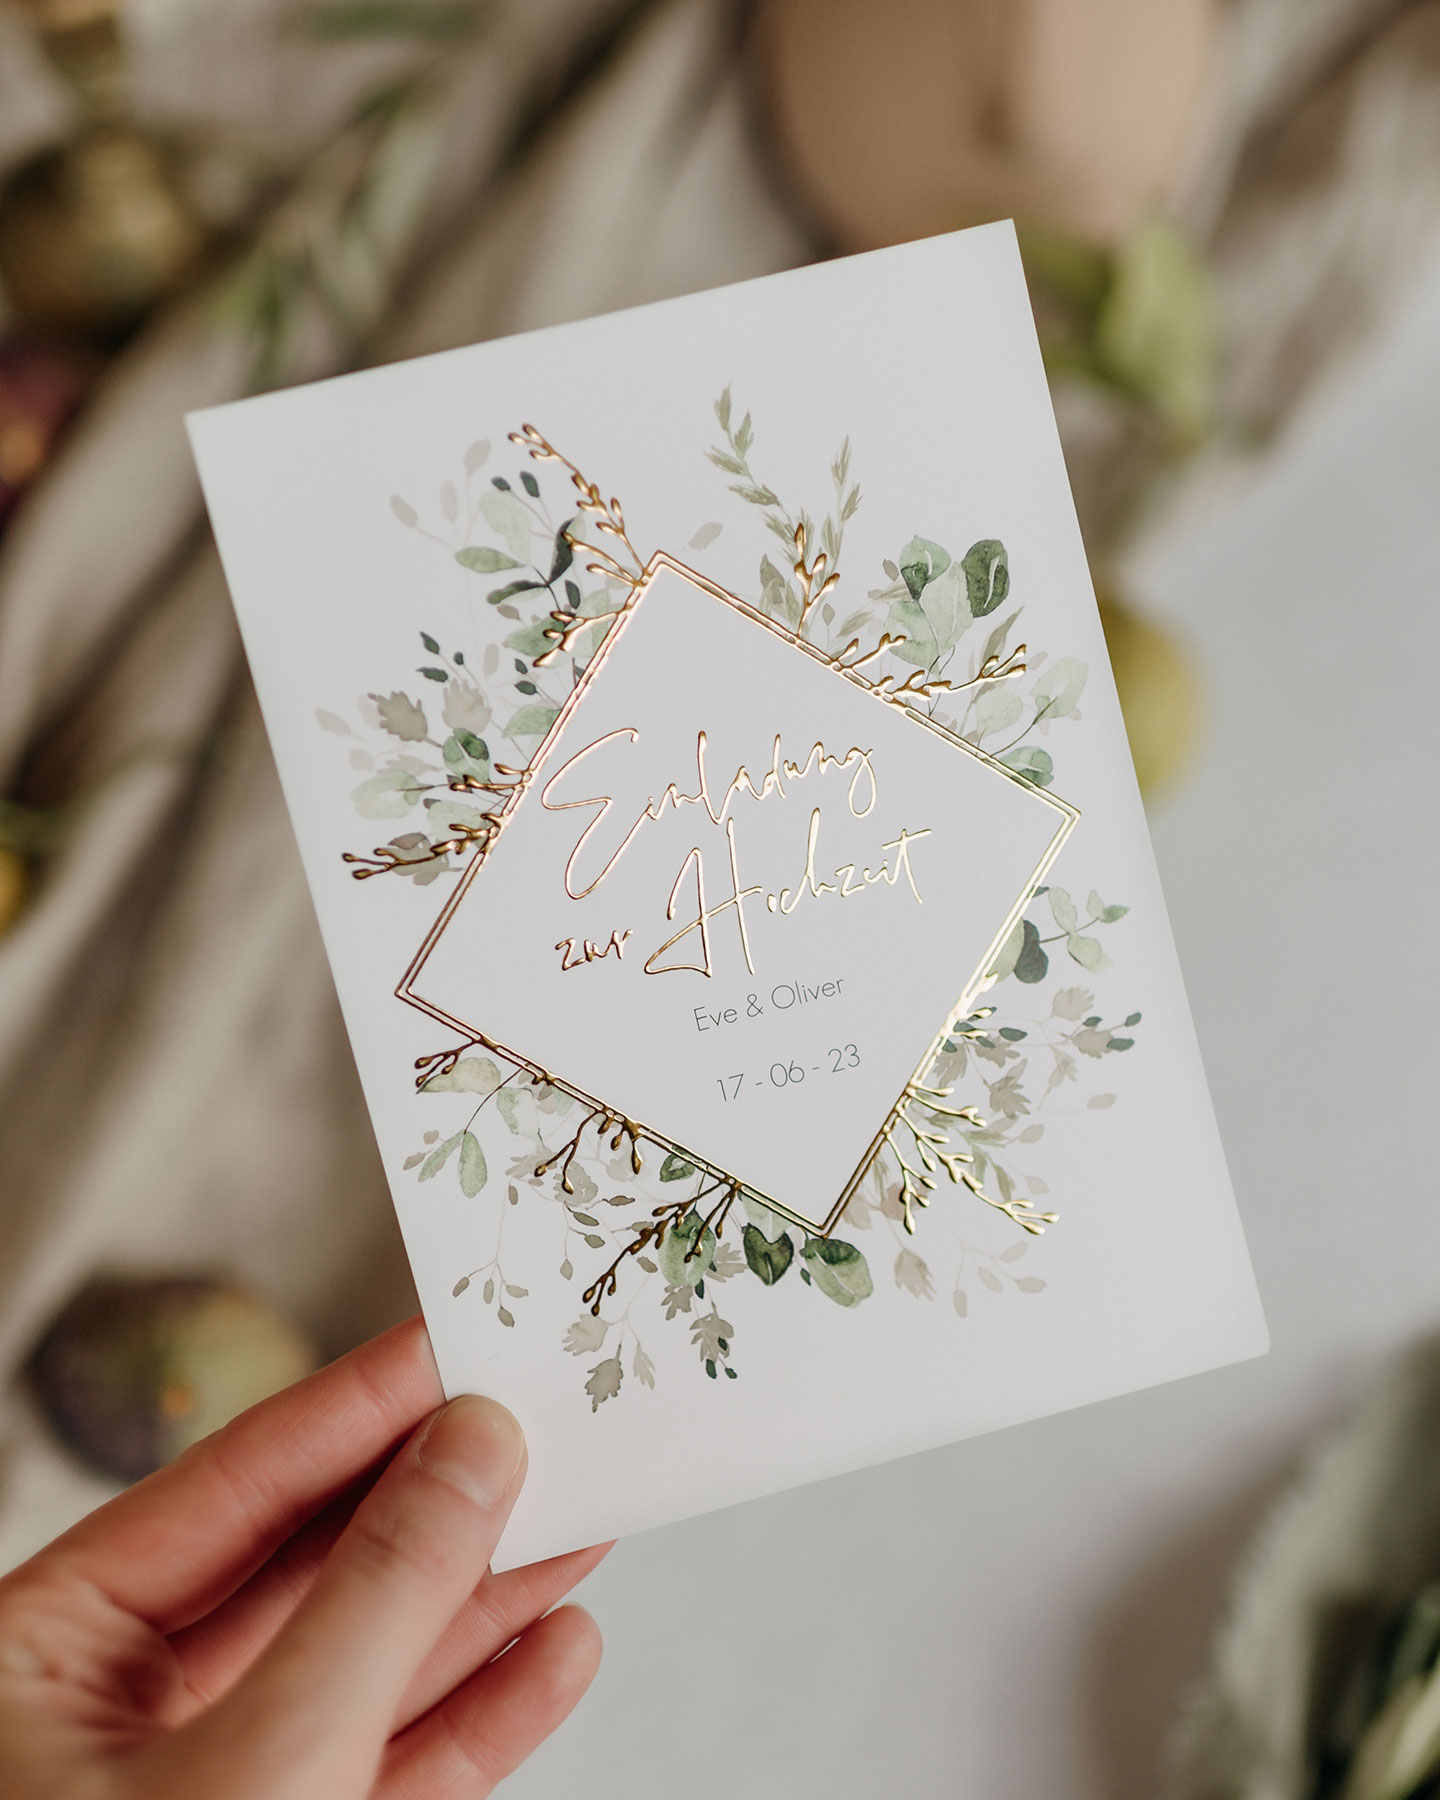 Die Hochzeitseinladung im Design Gold and Green macht ihrem Namen alle Ehre: Die goldene Veredelung umrahmt die handgezeichneten grünen Blätter.